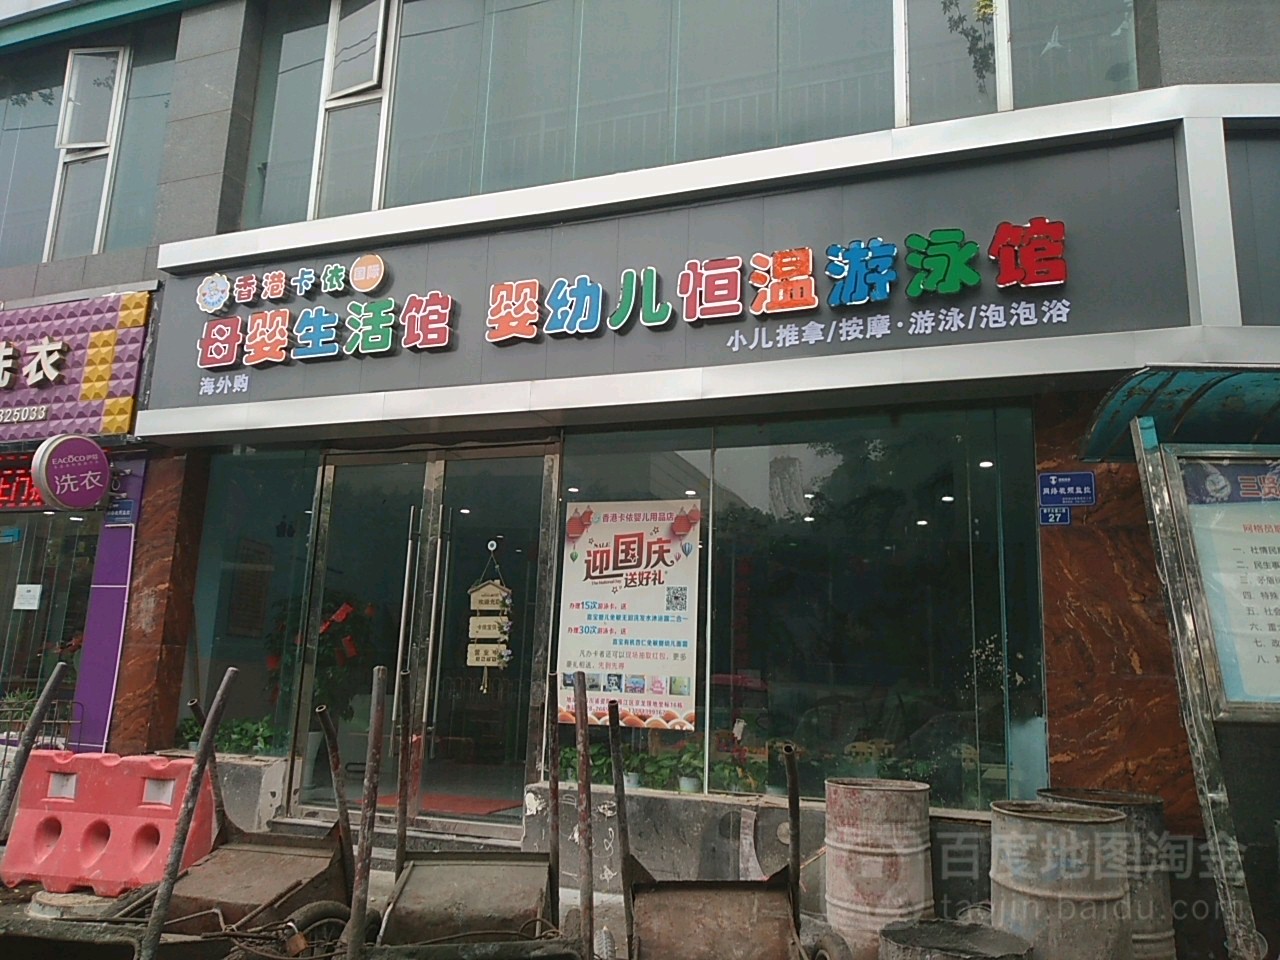 香港卡依宝贝母婴生活馆